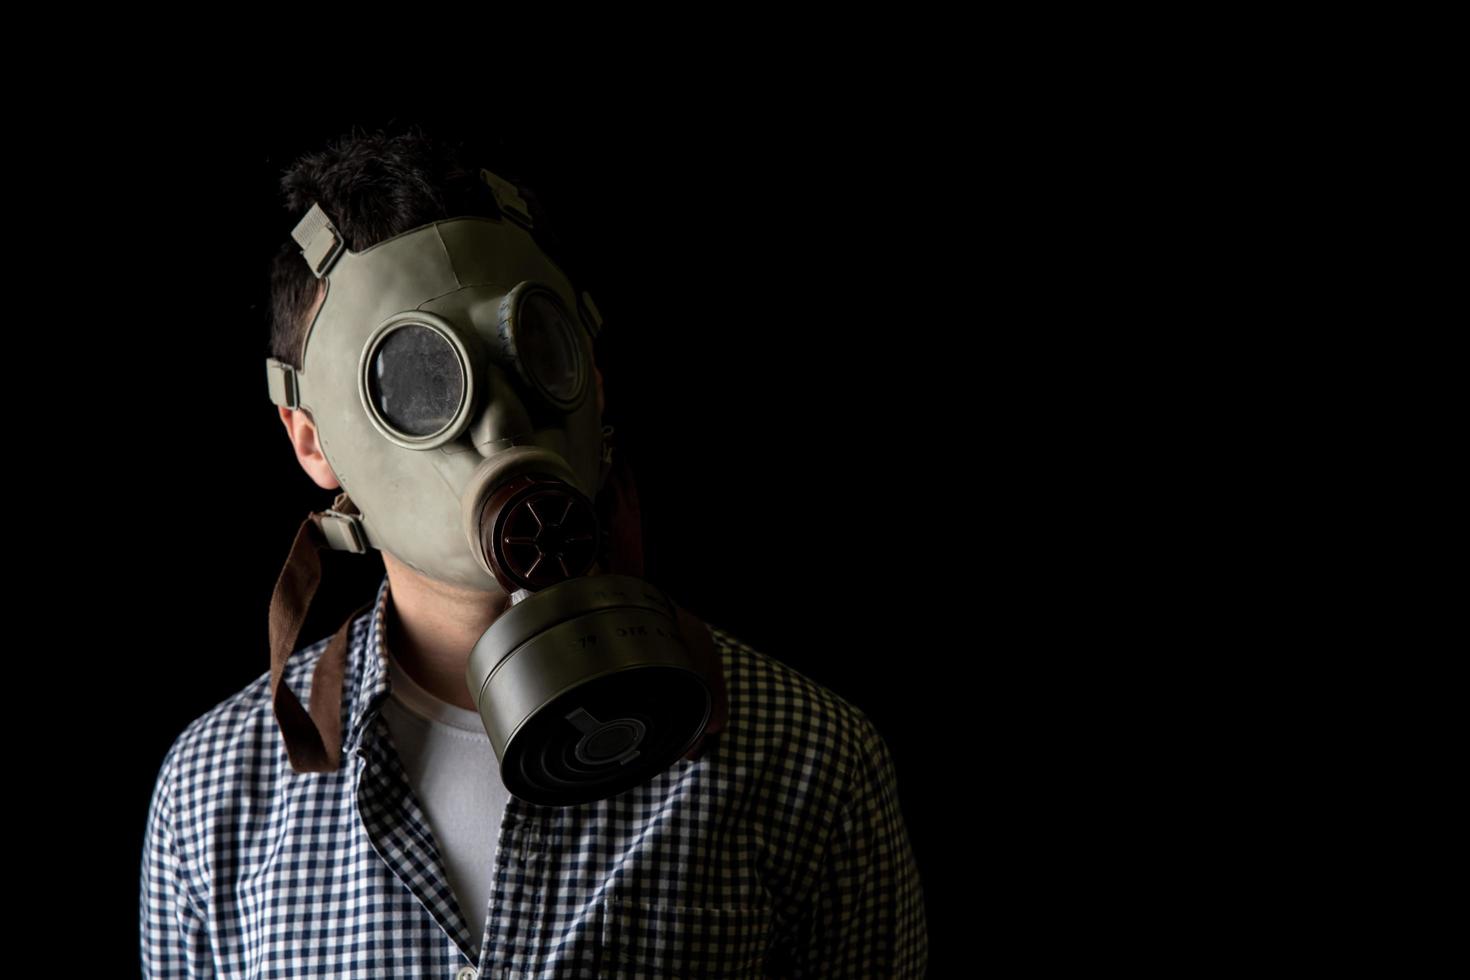 Mann in einer Gasmaske auf einem schwarzen Hintergrund, Schutz gegen Viren foto